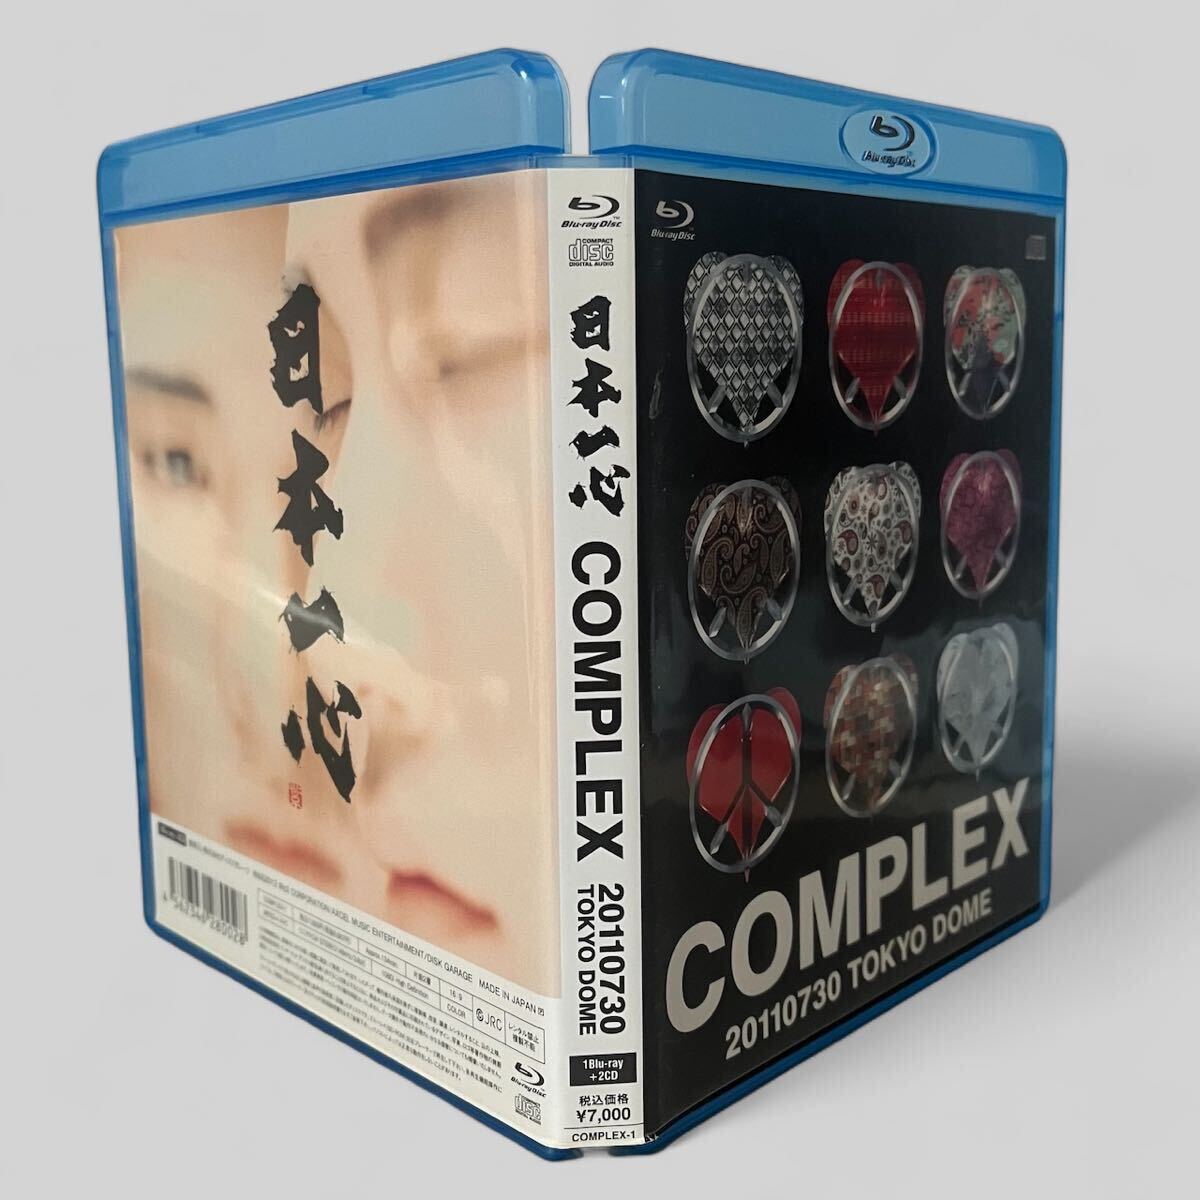 日本一心 COMPLEX Blu-ray 布袋寅泰 吉川晃司 の画像3